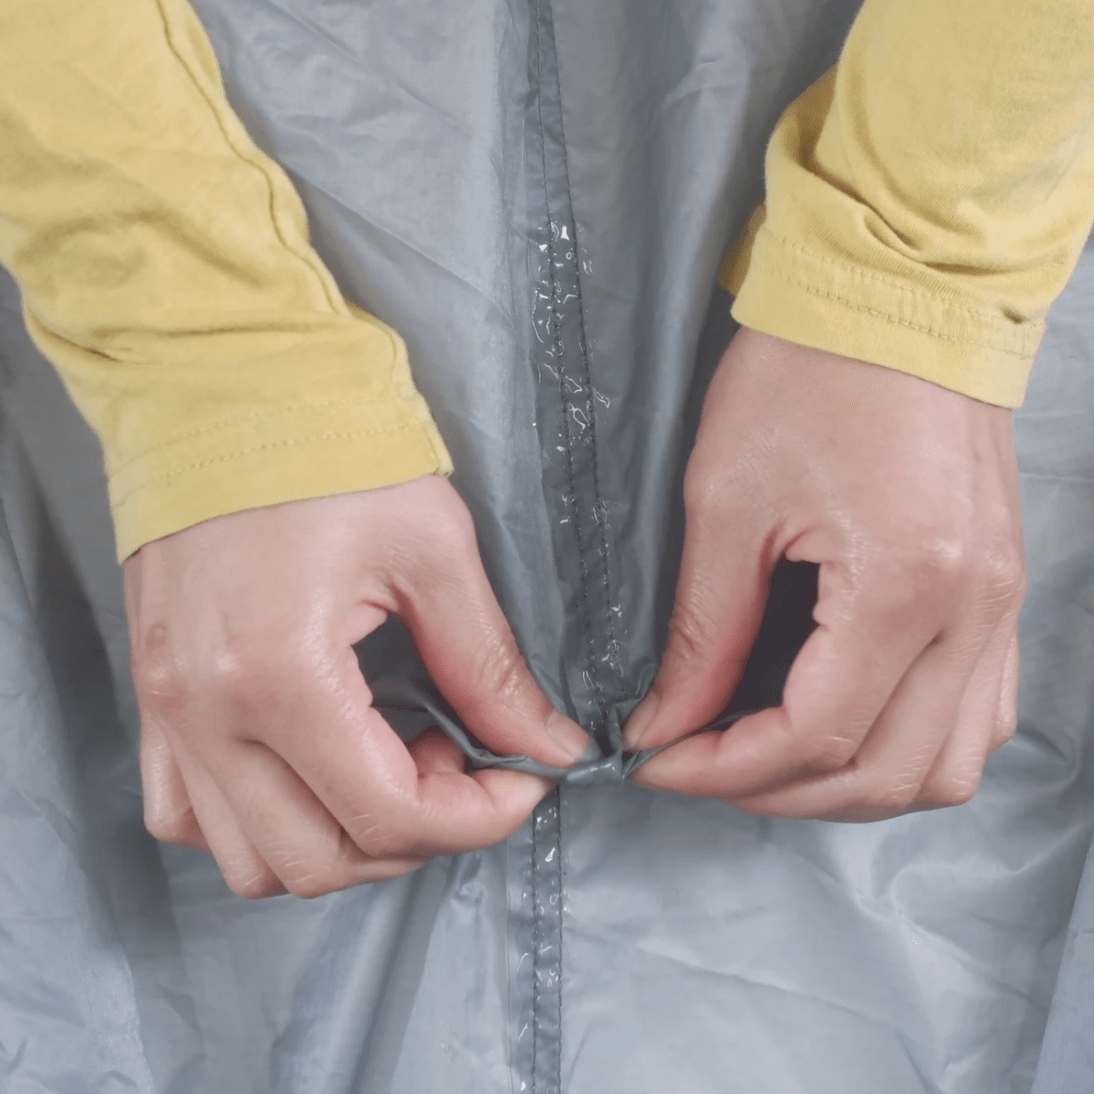 gear-aid Repair Kit Seam Grip SIL Silicone Tent Sealant MCN10003